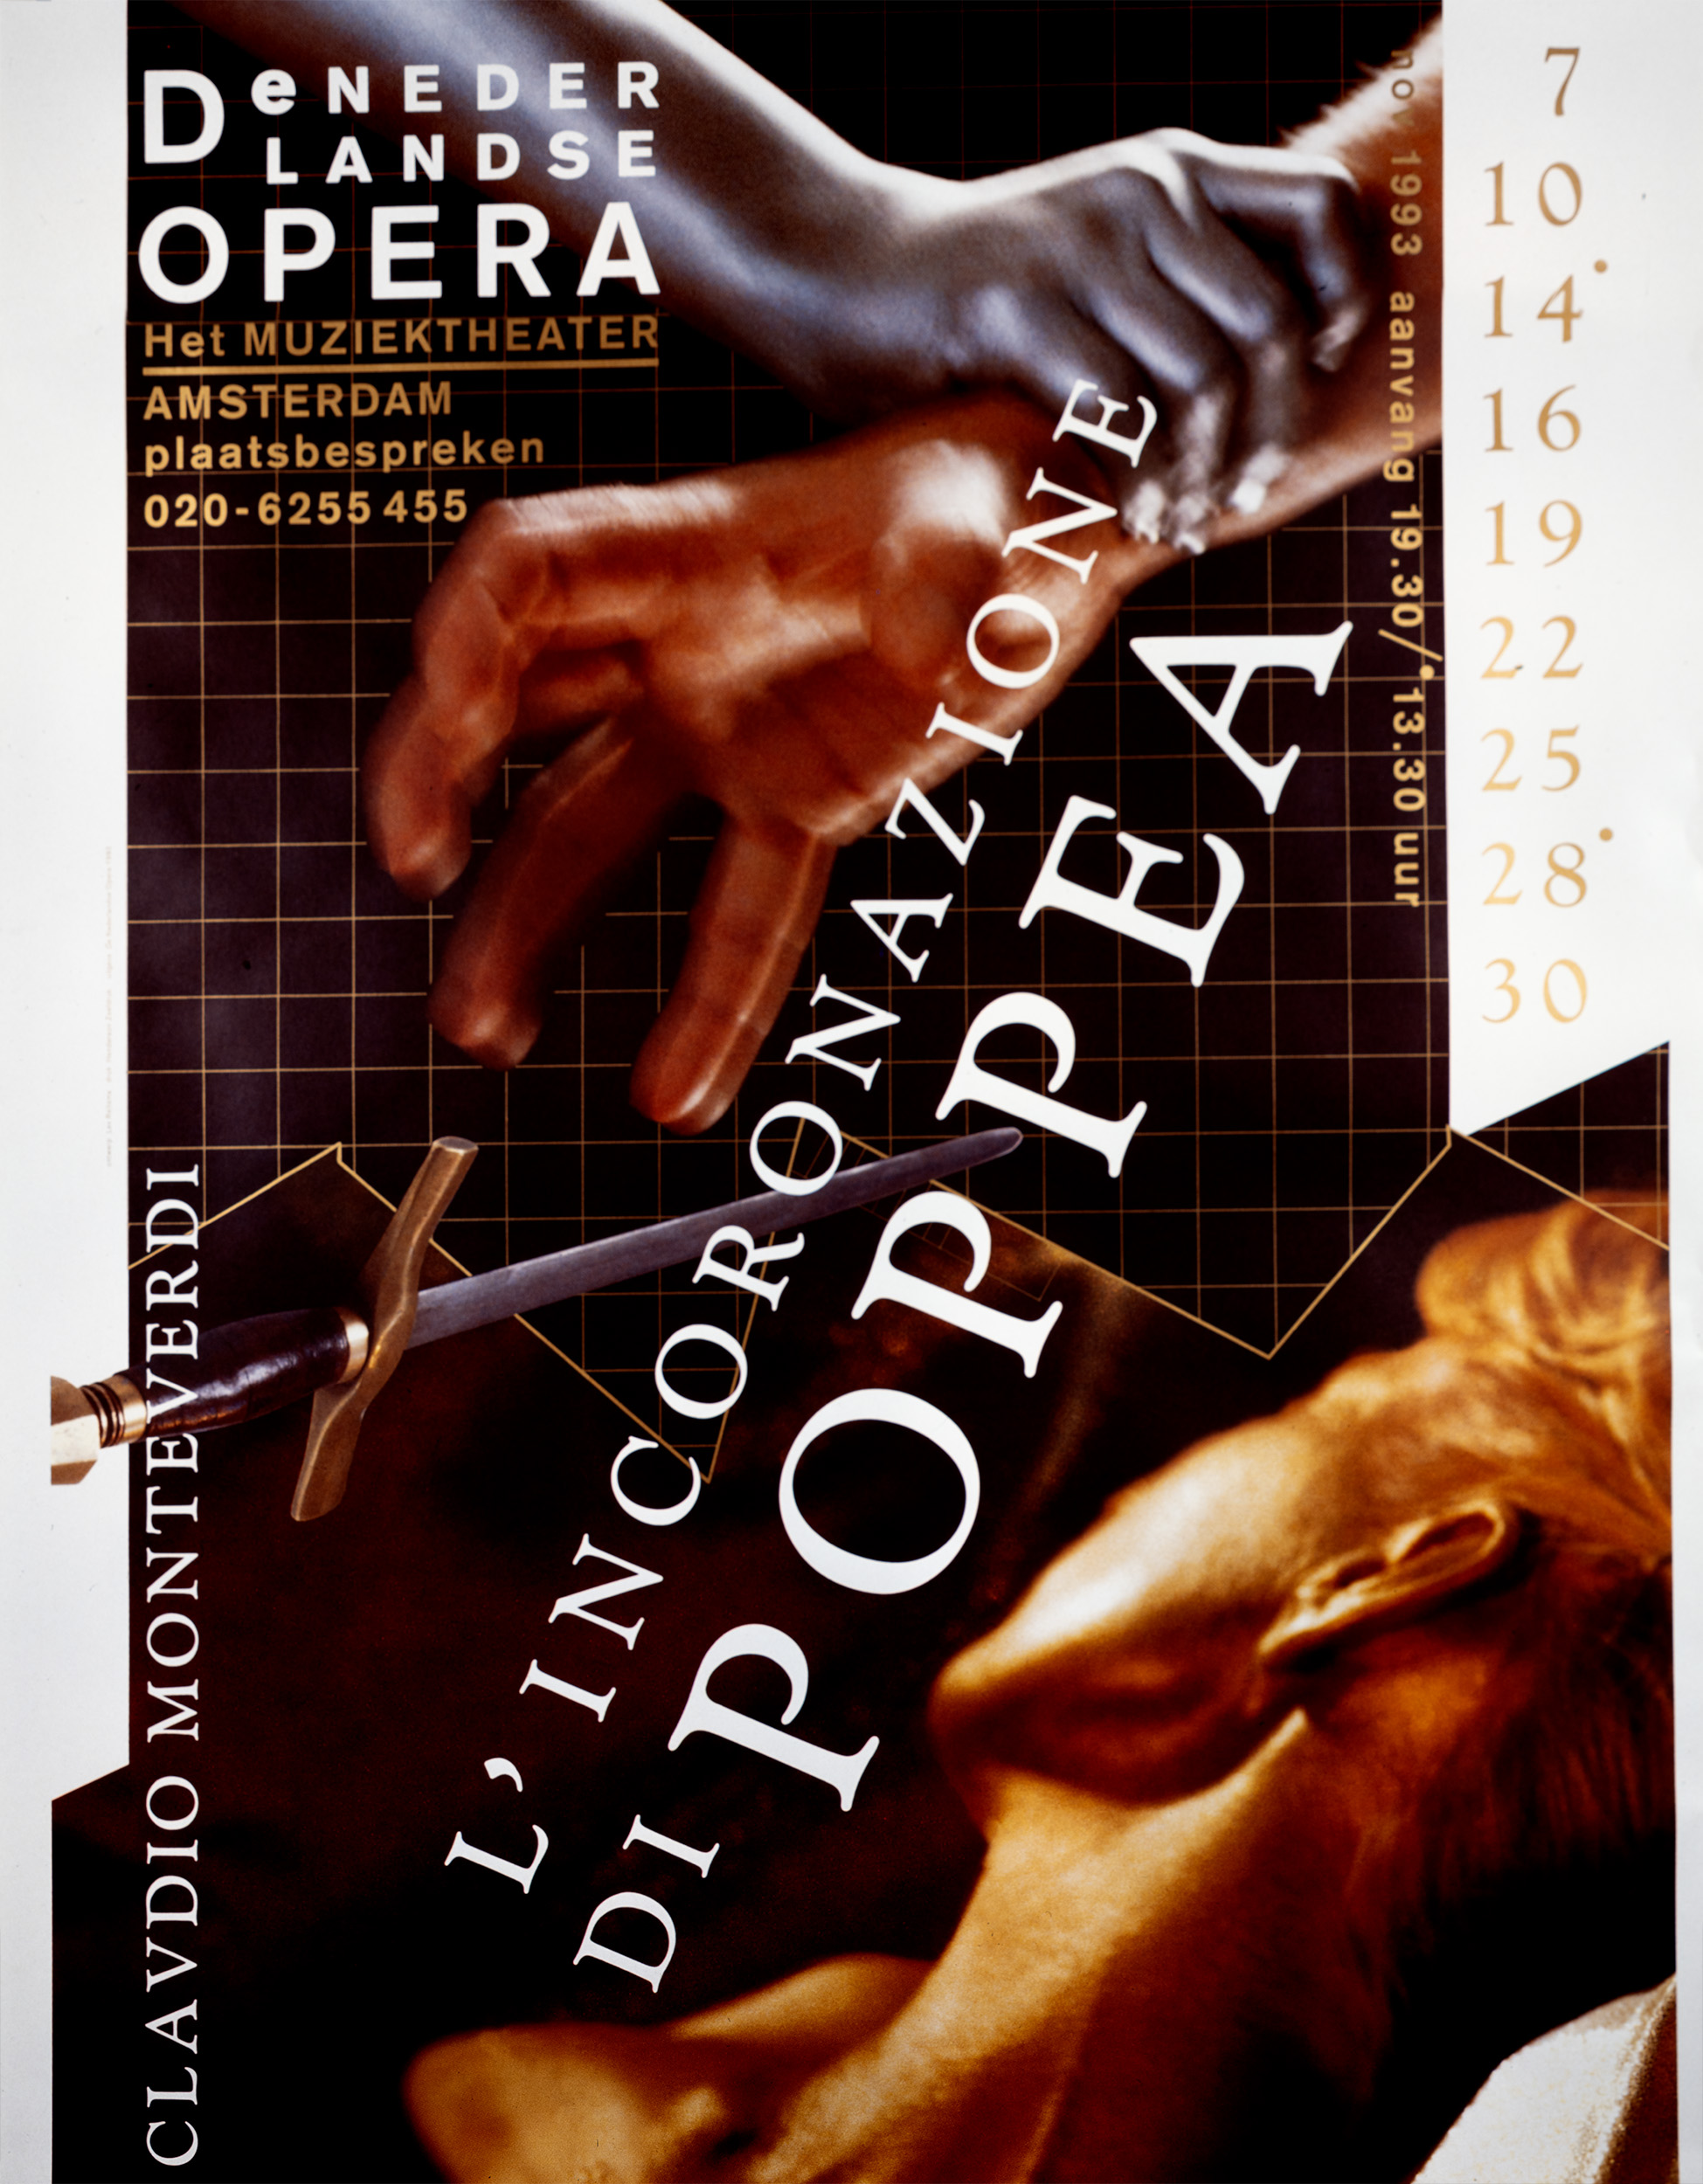 Fotografie voor de Nederlandse Opera. L' incoronazione di Poppea Art direction en vormgeving: Lex Reitsma